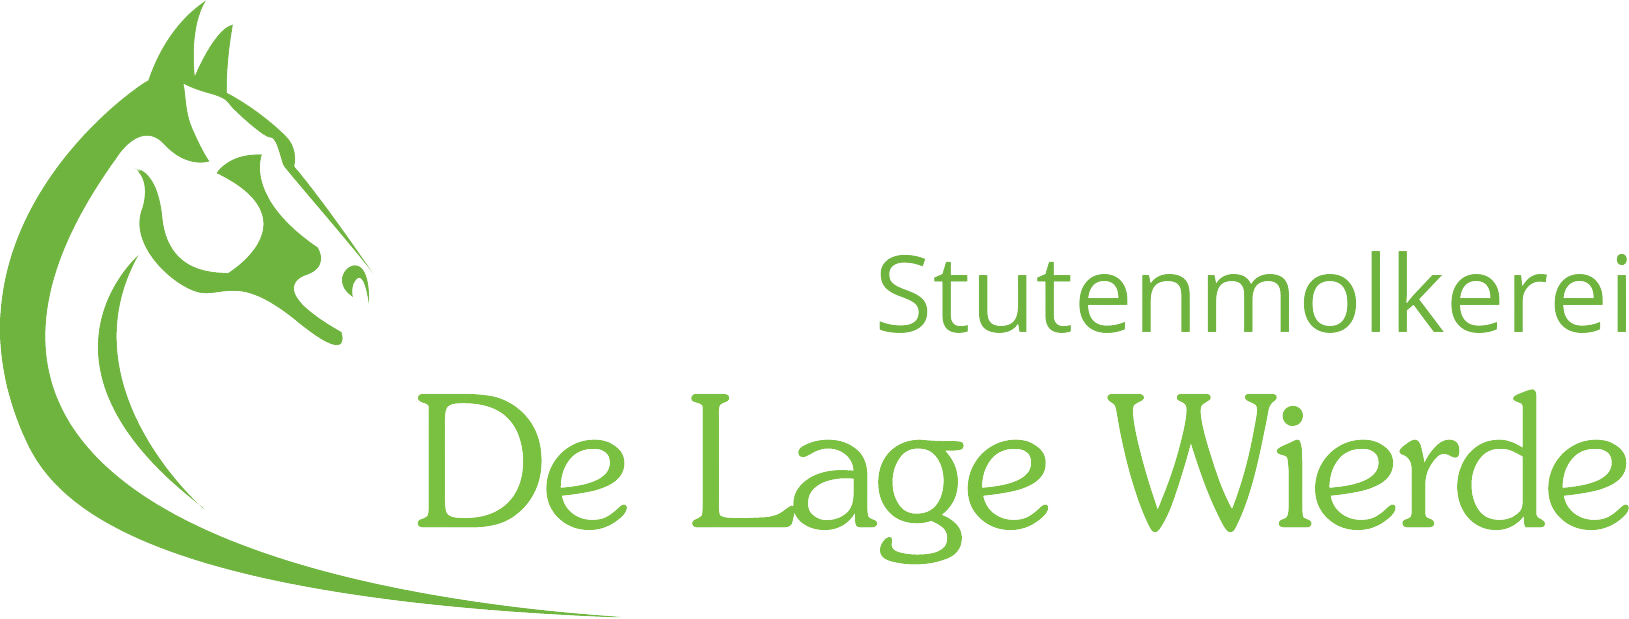 Stutenmilch - Stutenmolkerei de Lage Wierde